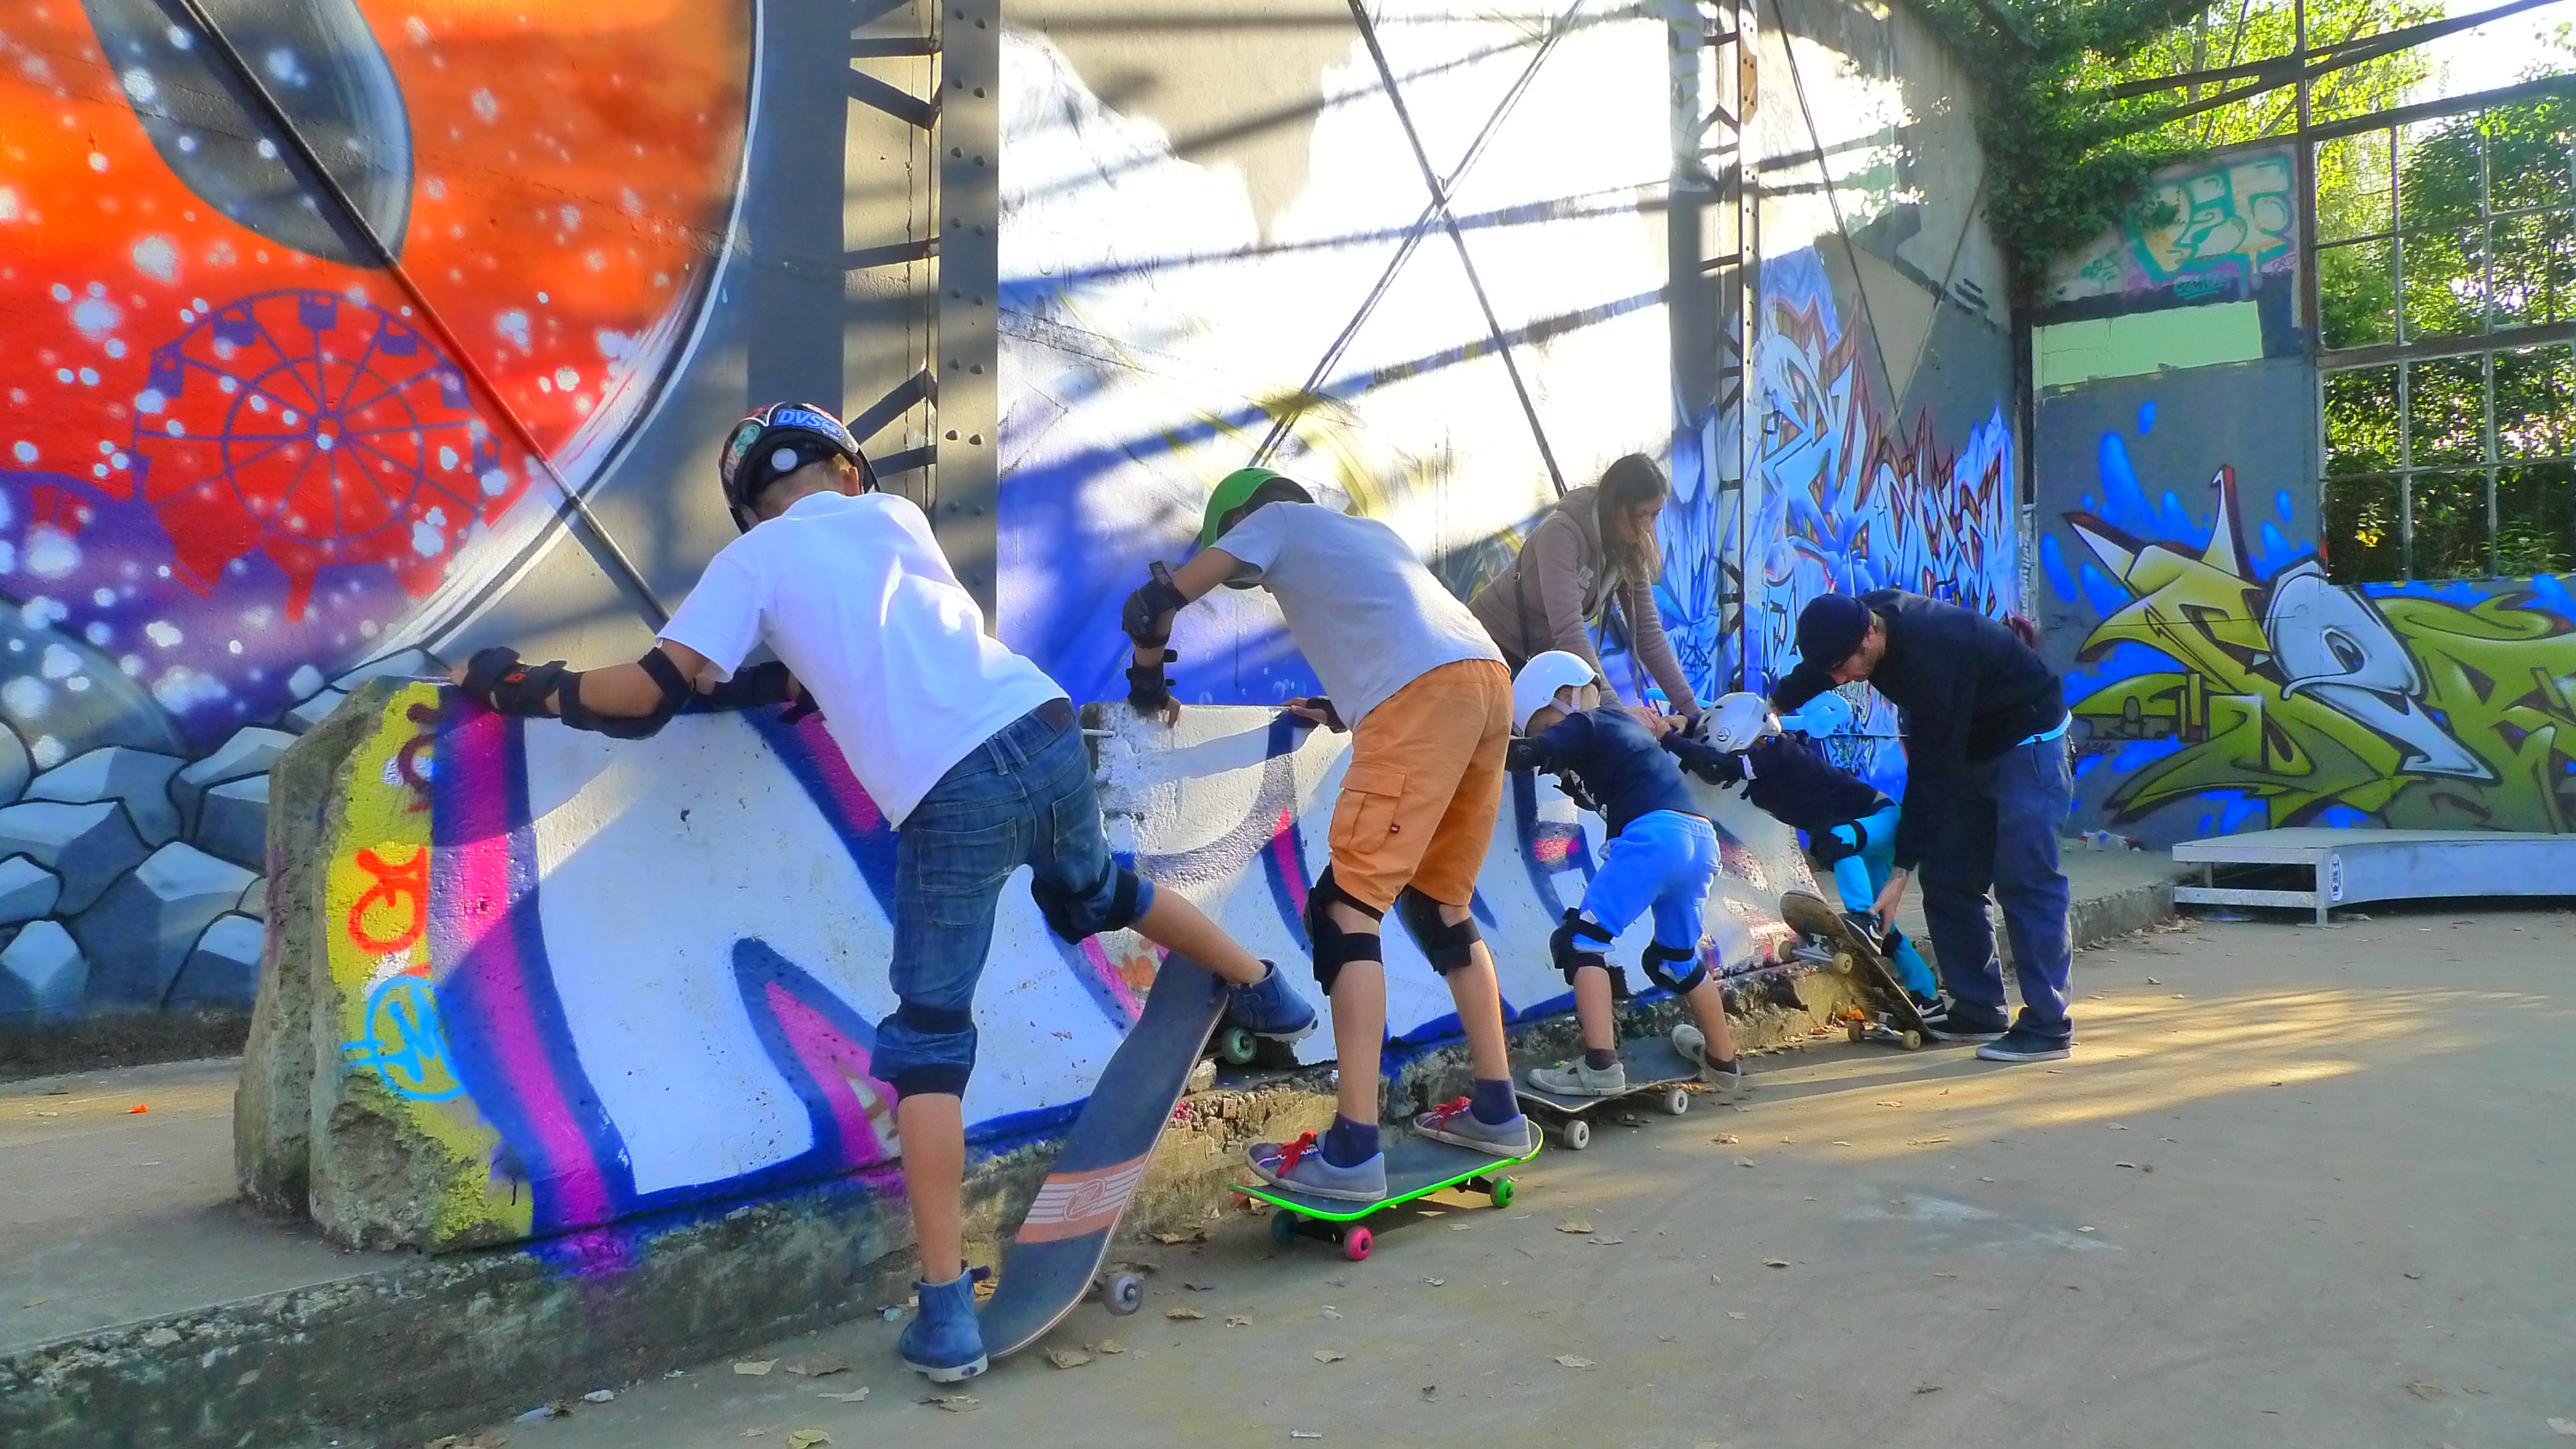 Cours de skate à Bordeaux - Le Top pour les enfants - Un Air de Bordeaux